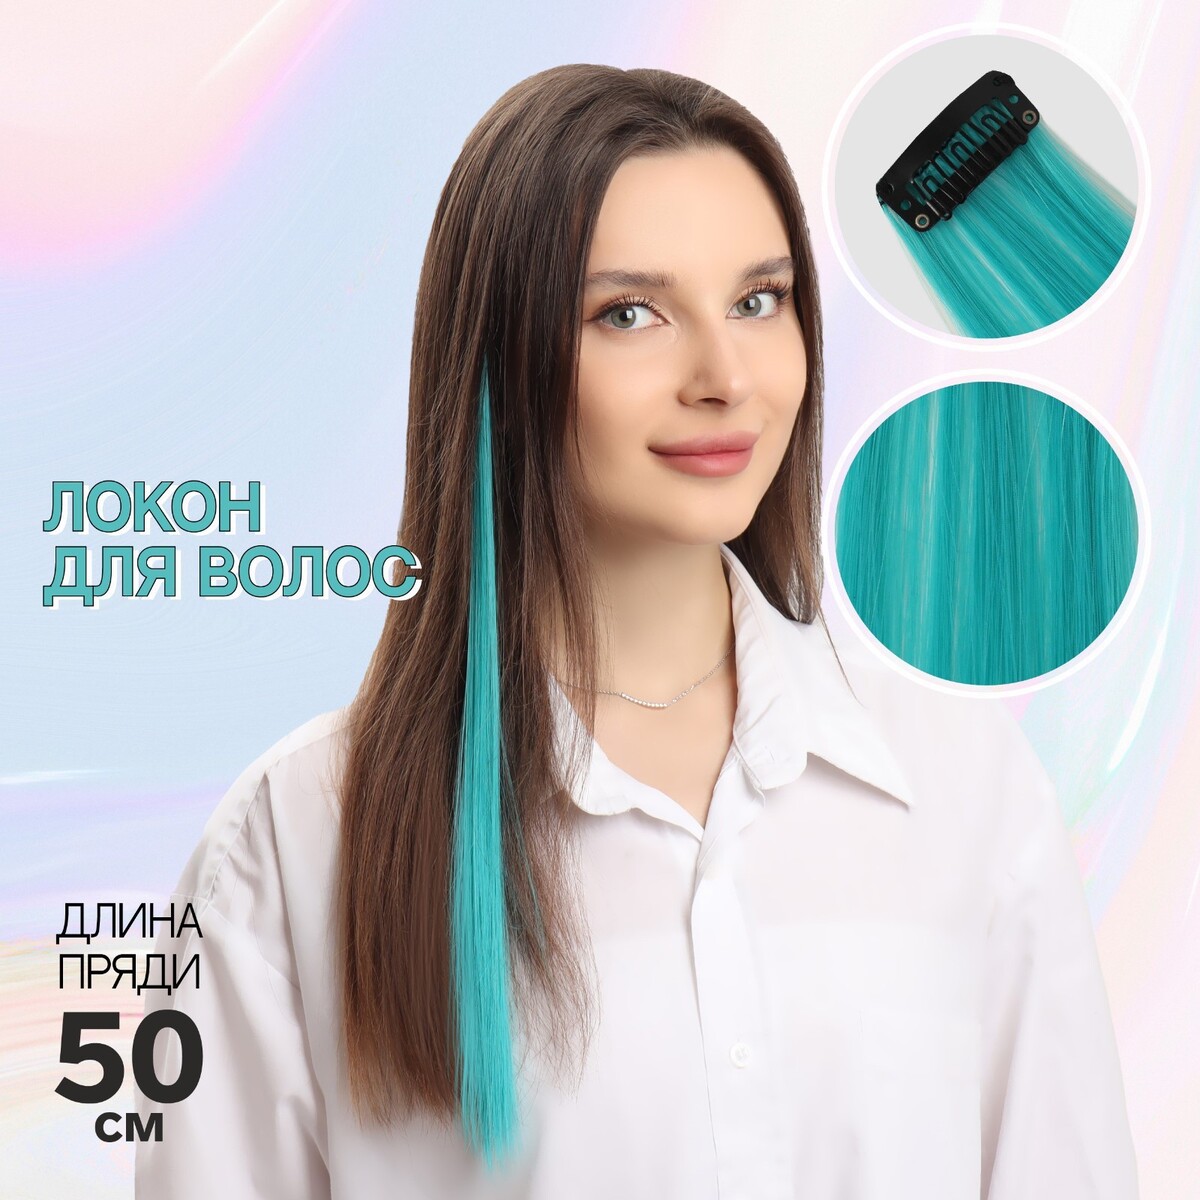 Локон накладной, прямой волос, на заколке, 50 см, 5 гр, цвет бирюзовый эпилятор ластик женский для удаления волос бирюзовый